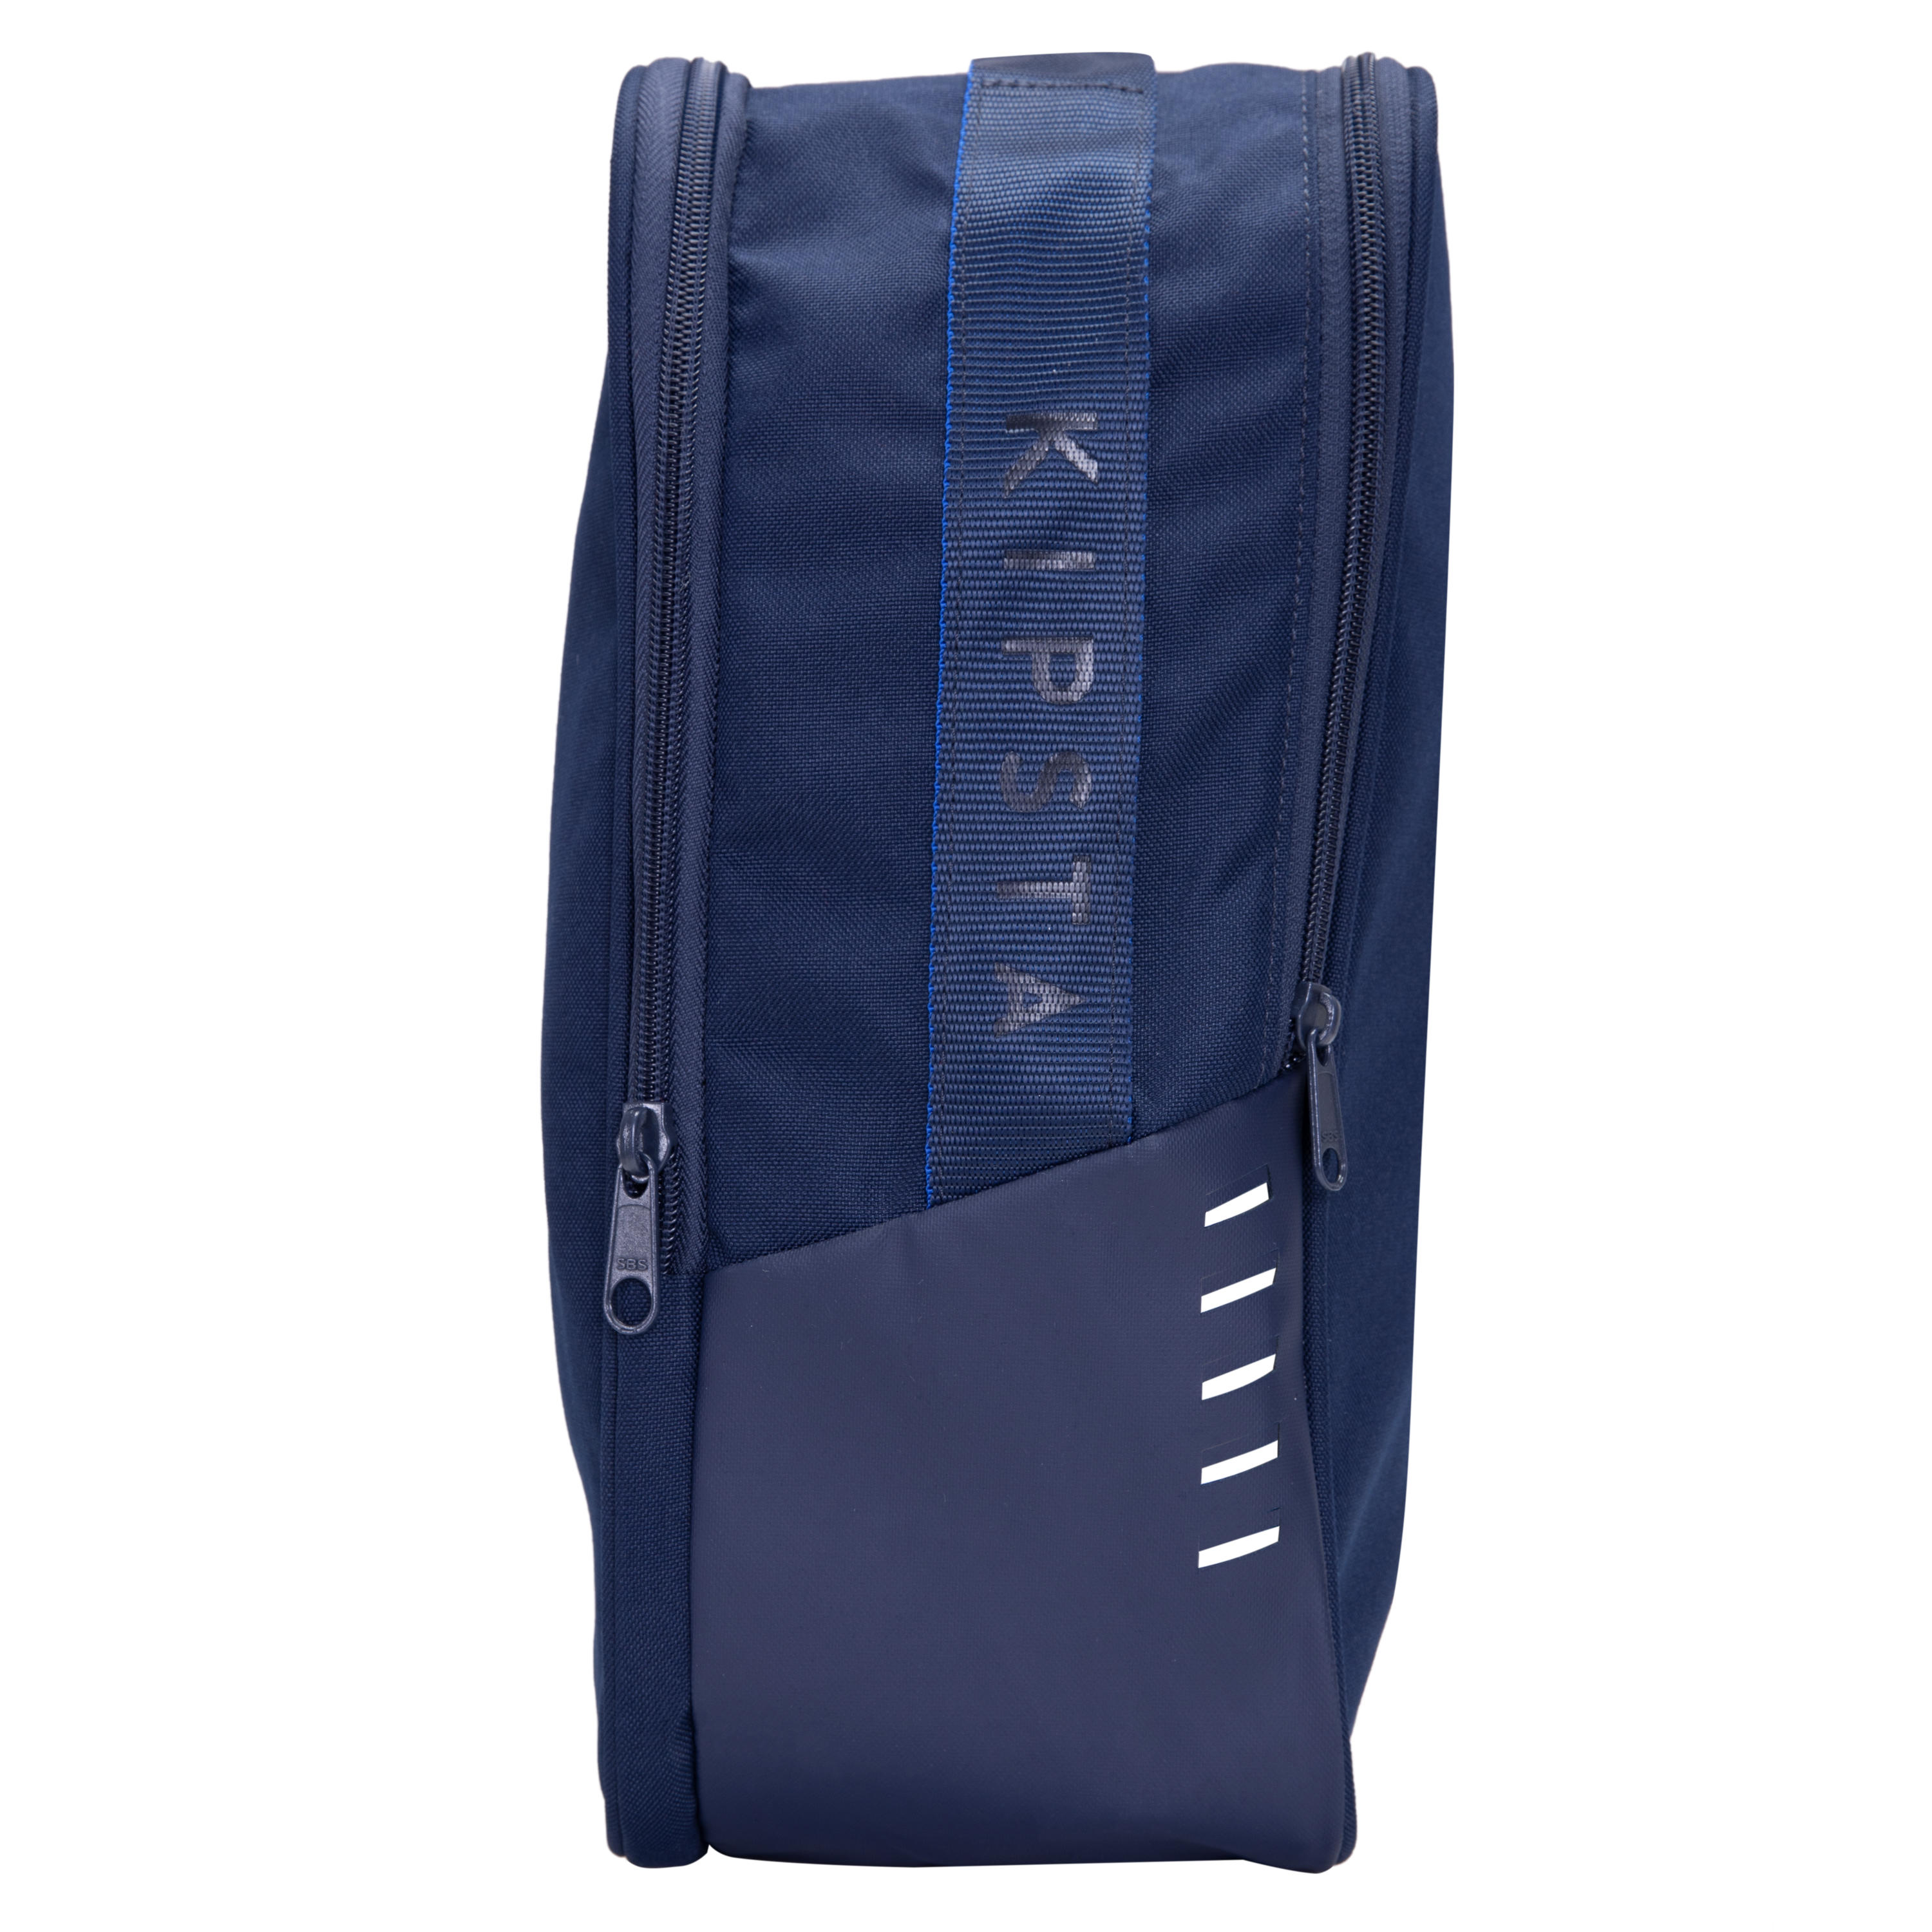 Decathlon Football Backpack Bag 35L – Giftlinks Online Store